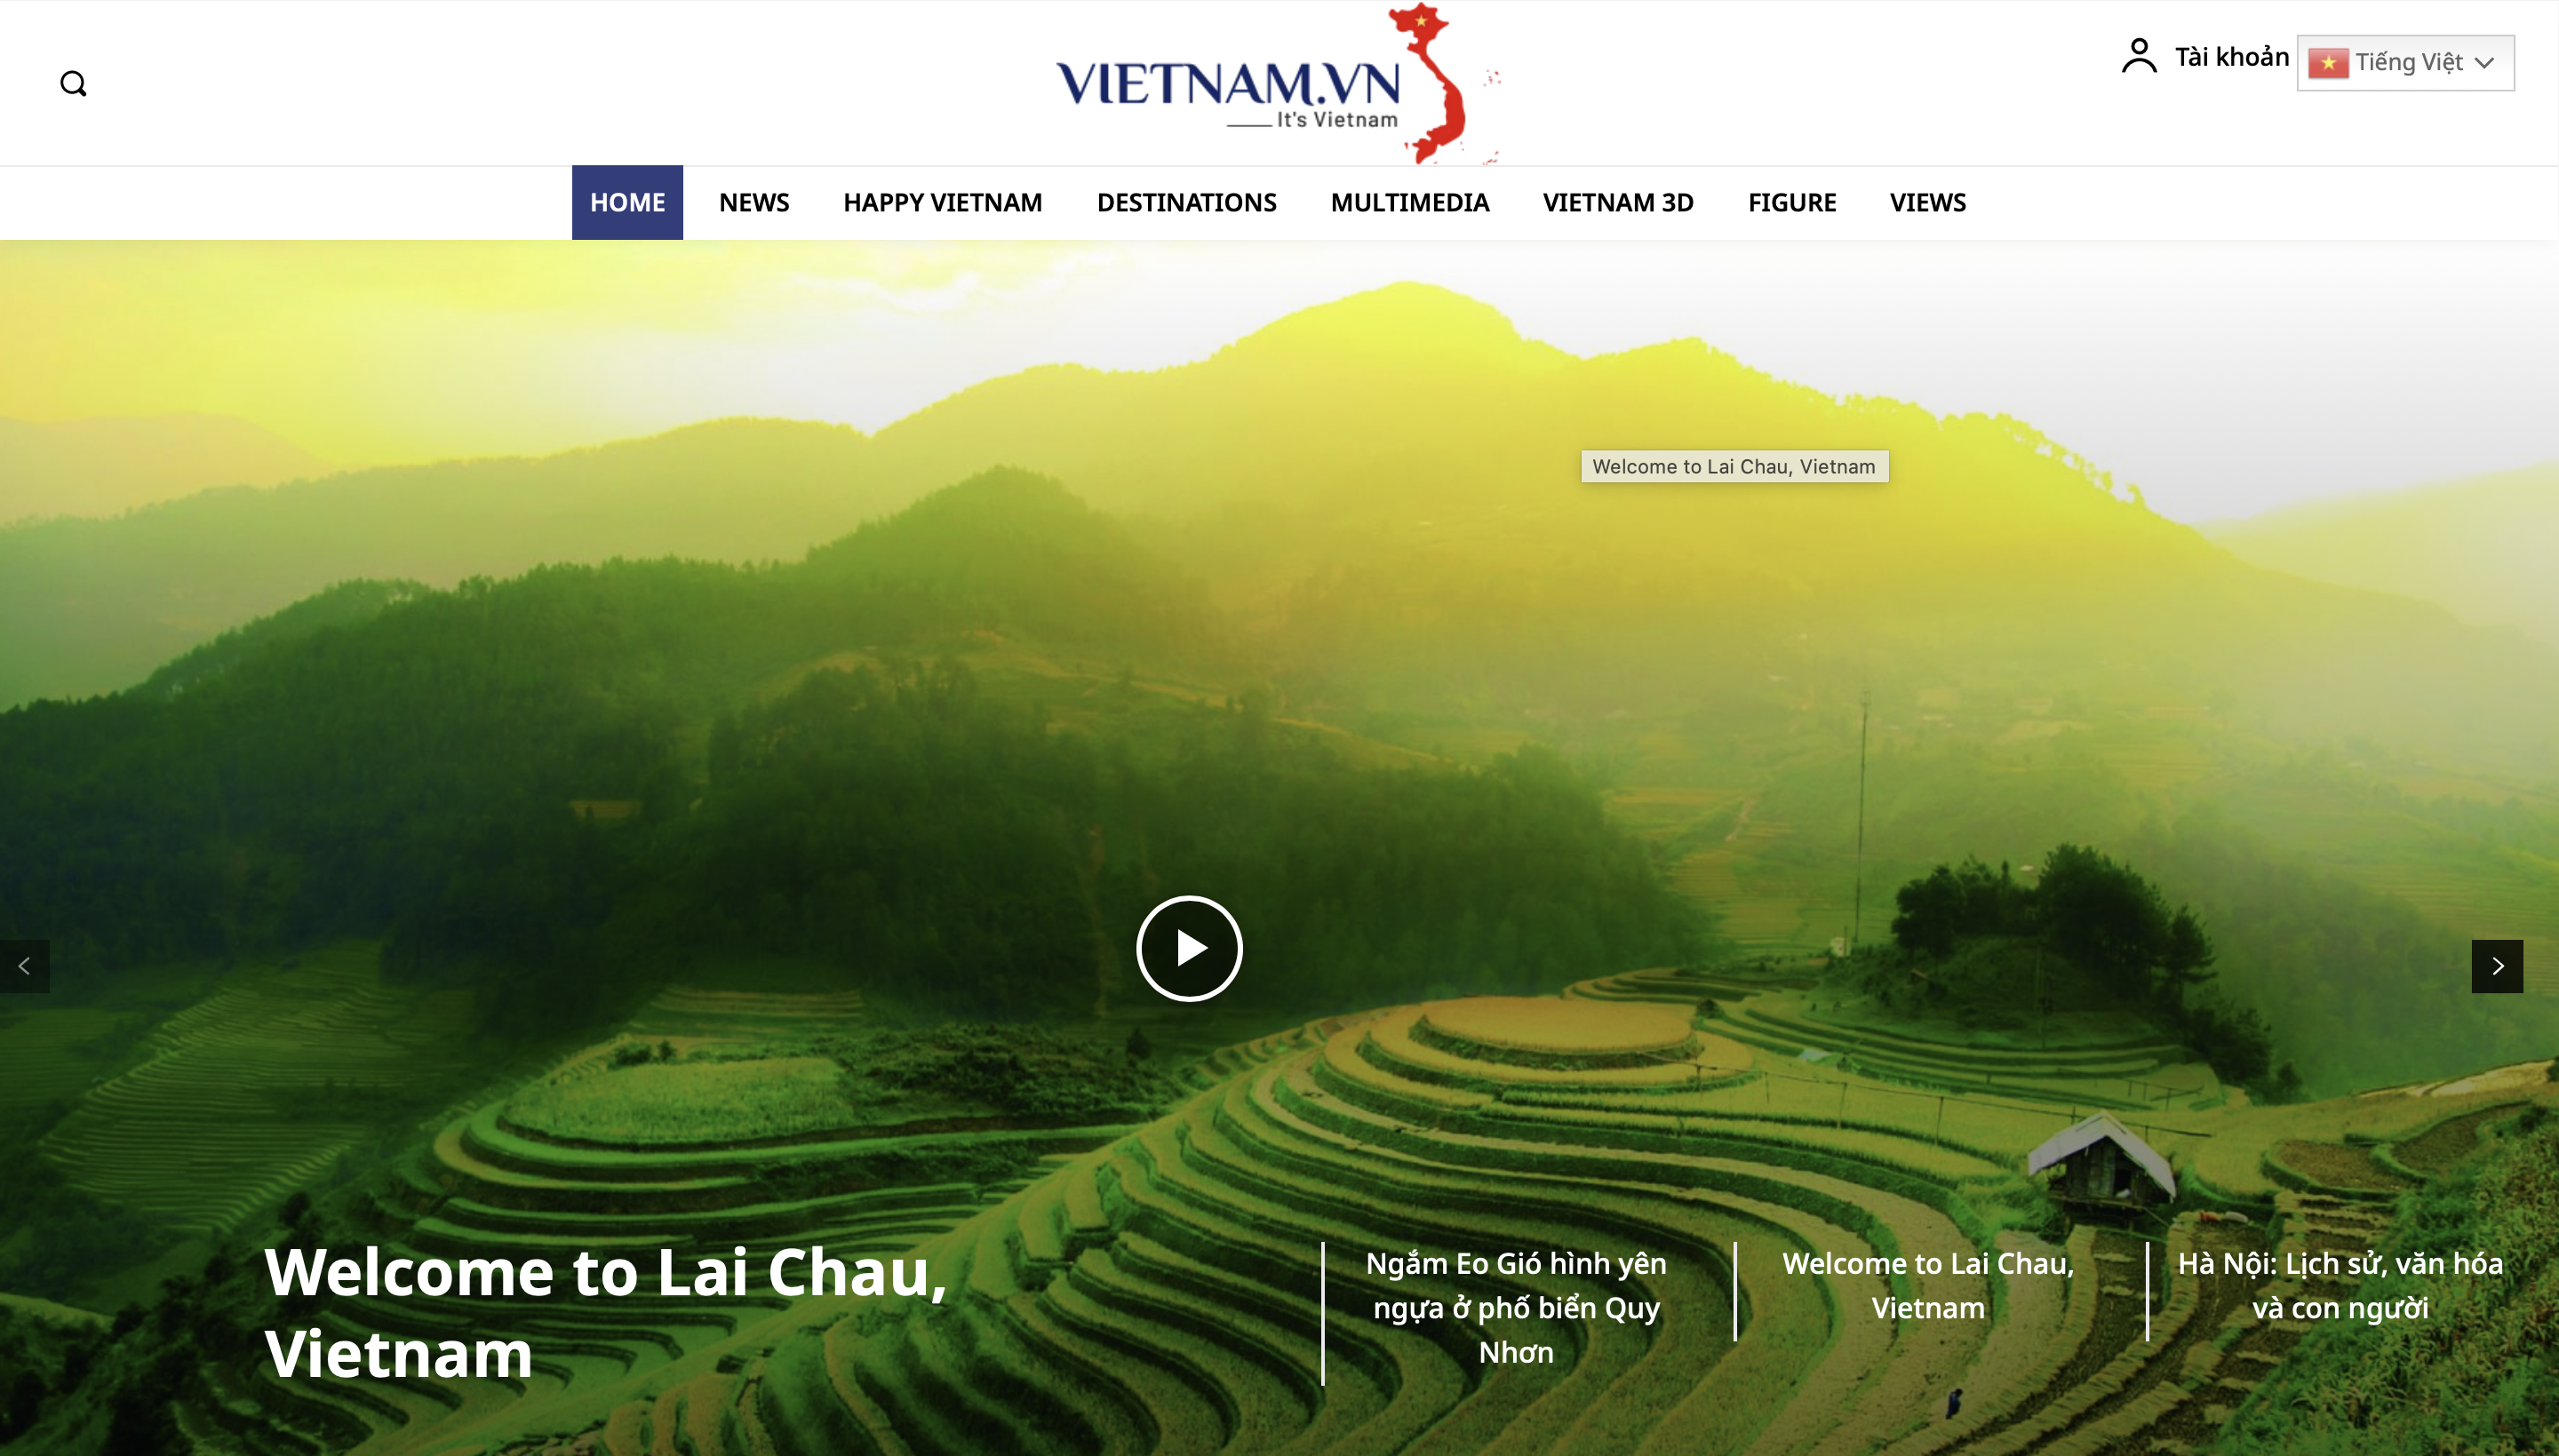 Запуск платформы для продвижения имиджа Вьетнама